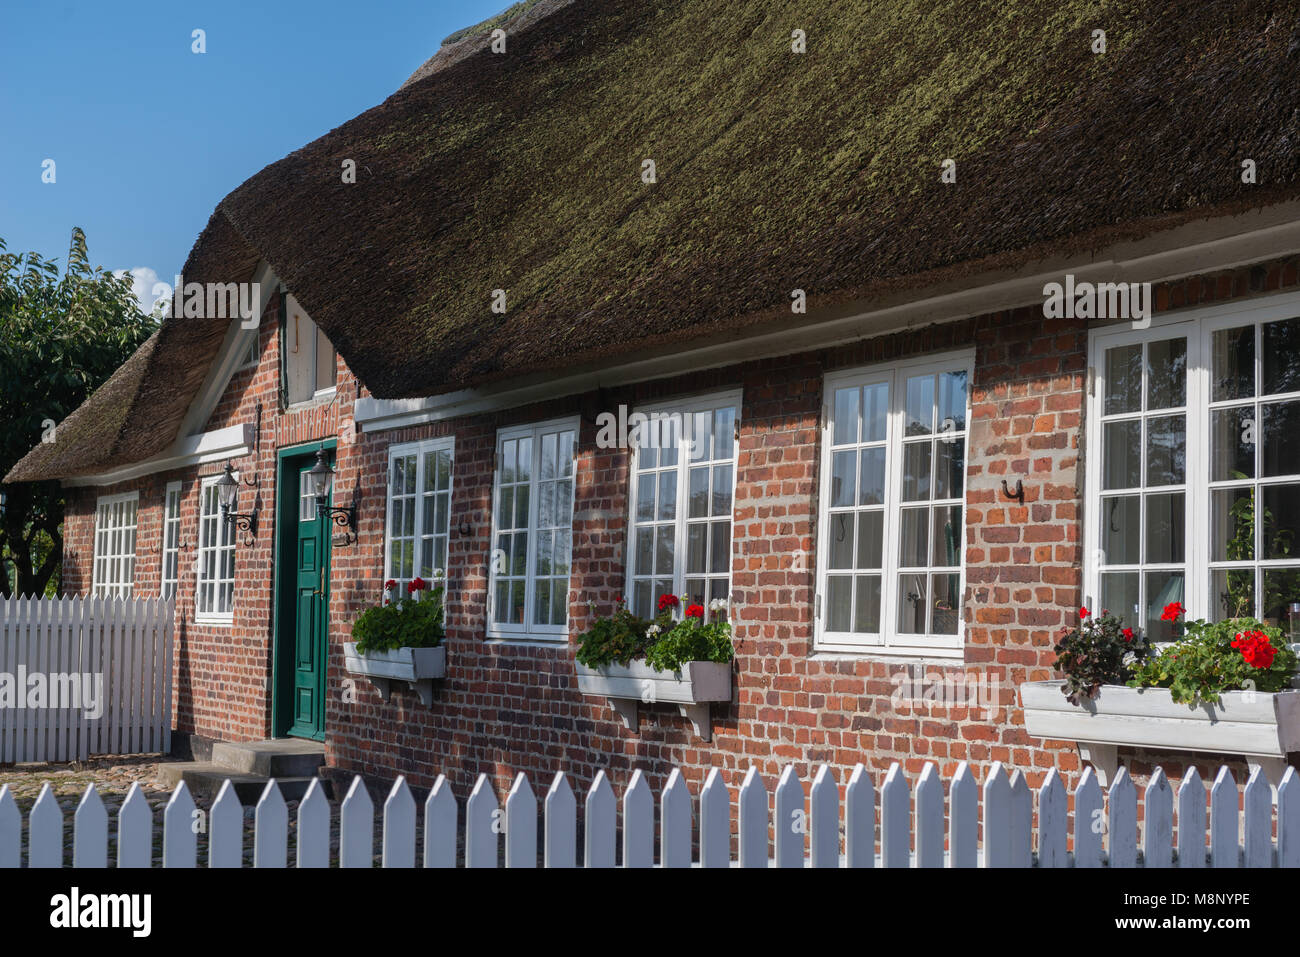 Tipica casa danese in Nordby, isola di Fanoe, nello Jutland, Danimarca Foto Stock